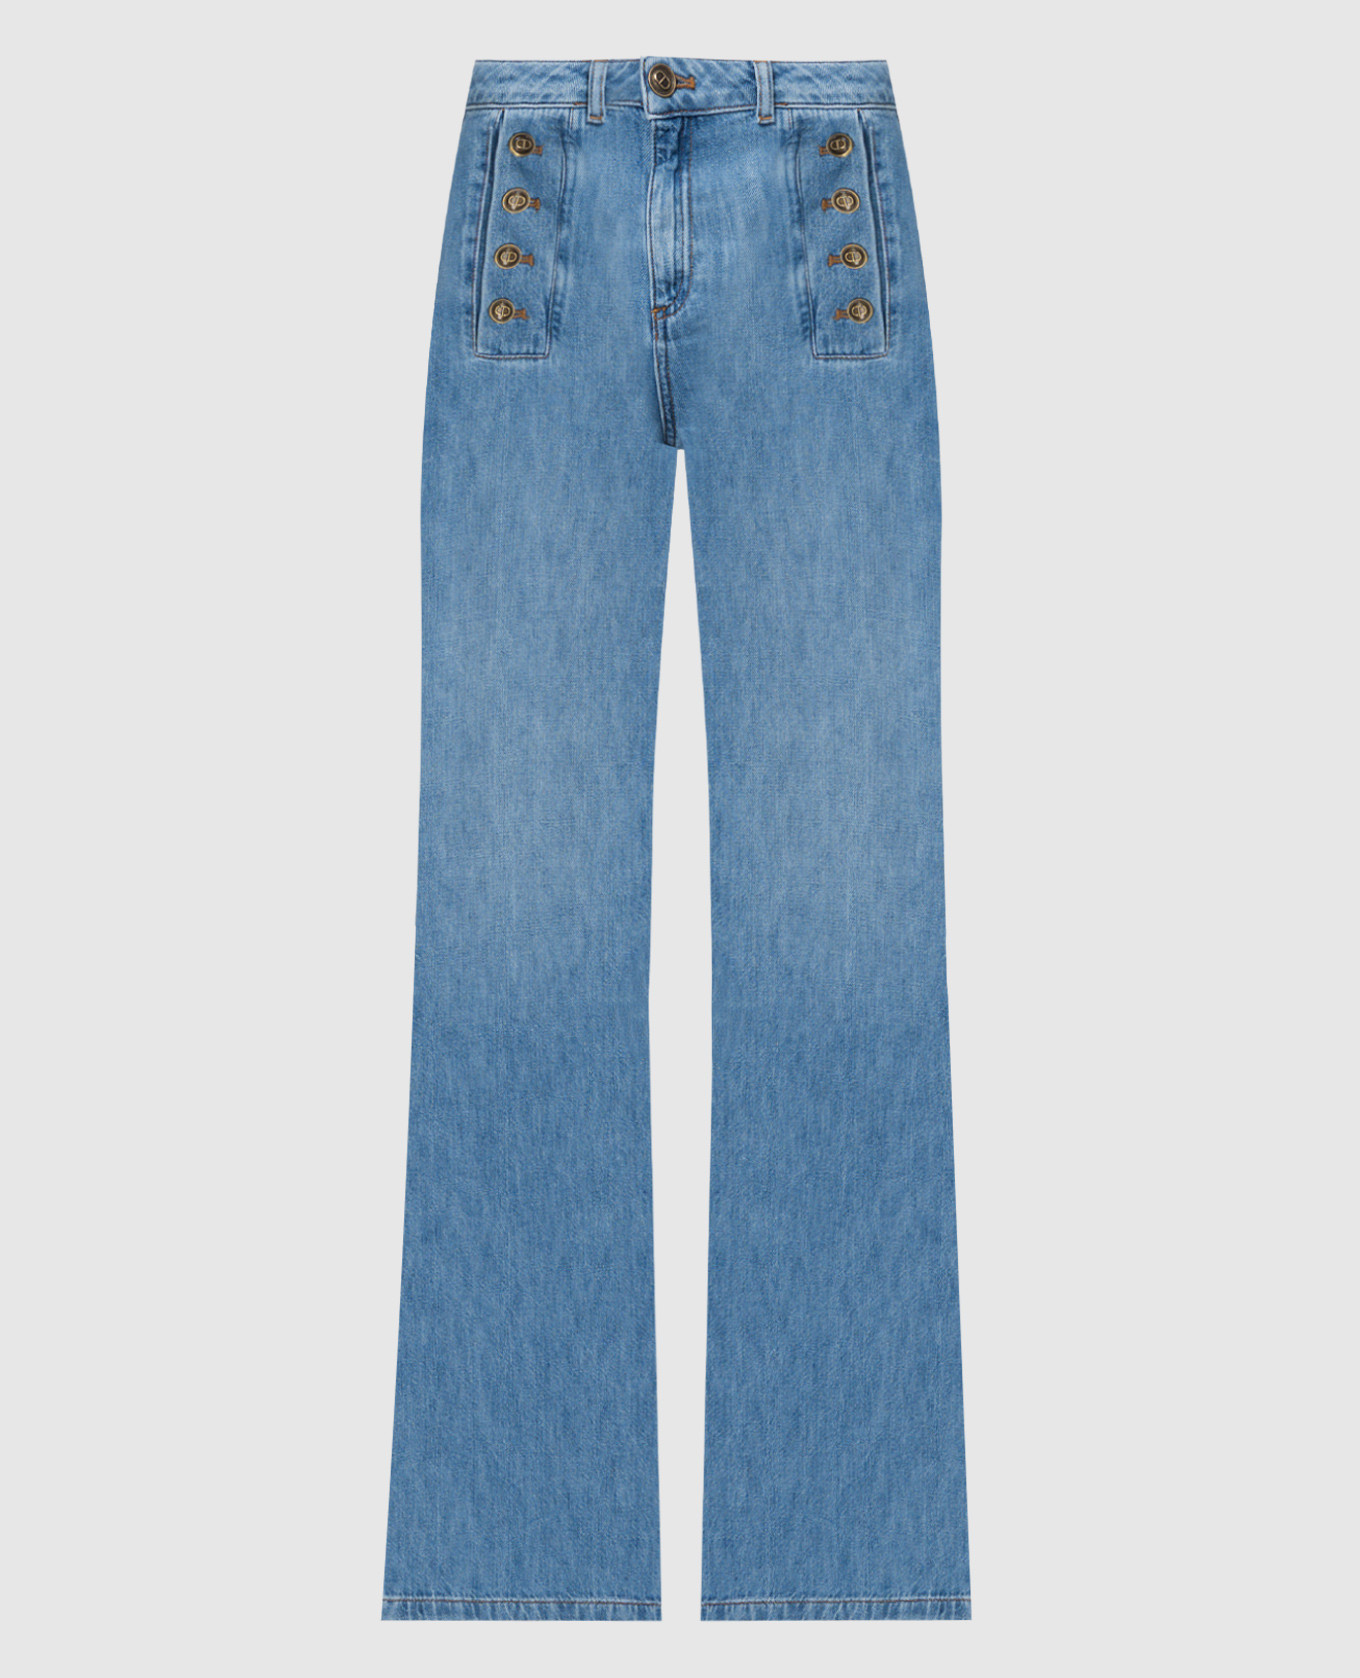 Голубые джинсы клеш с брендированными пуговицами